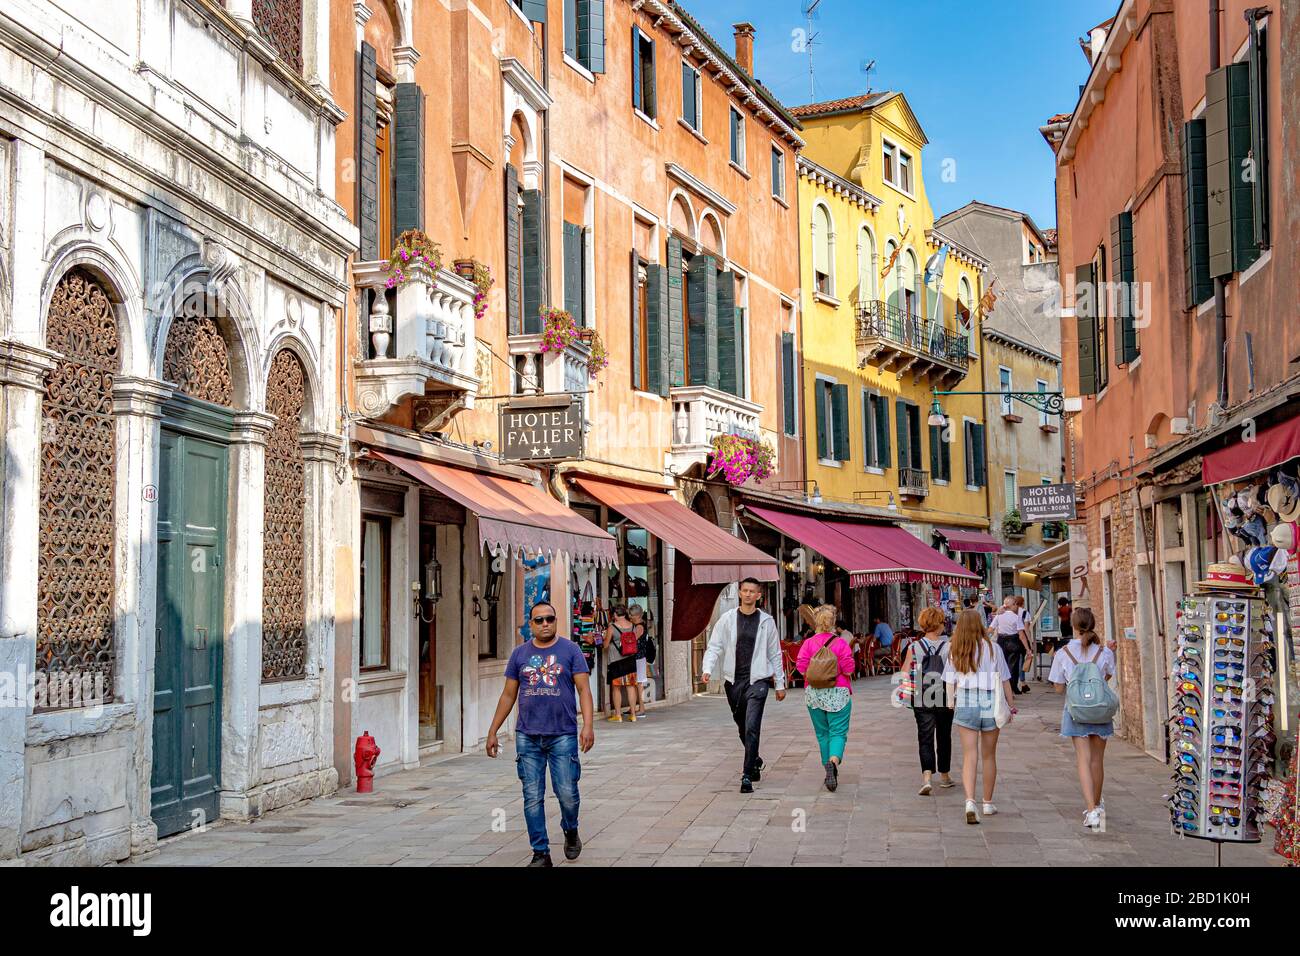 Gente caminando por Salizada San Pantalon pasando el Hotel Falier en el distrito de Santa Croce de Venecia, Italia Foto de stock